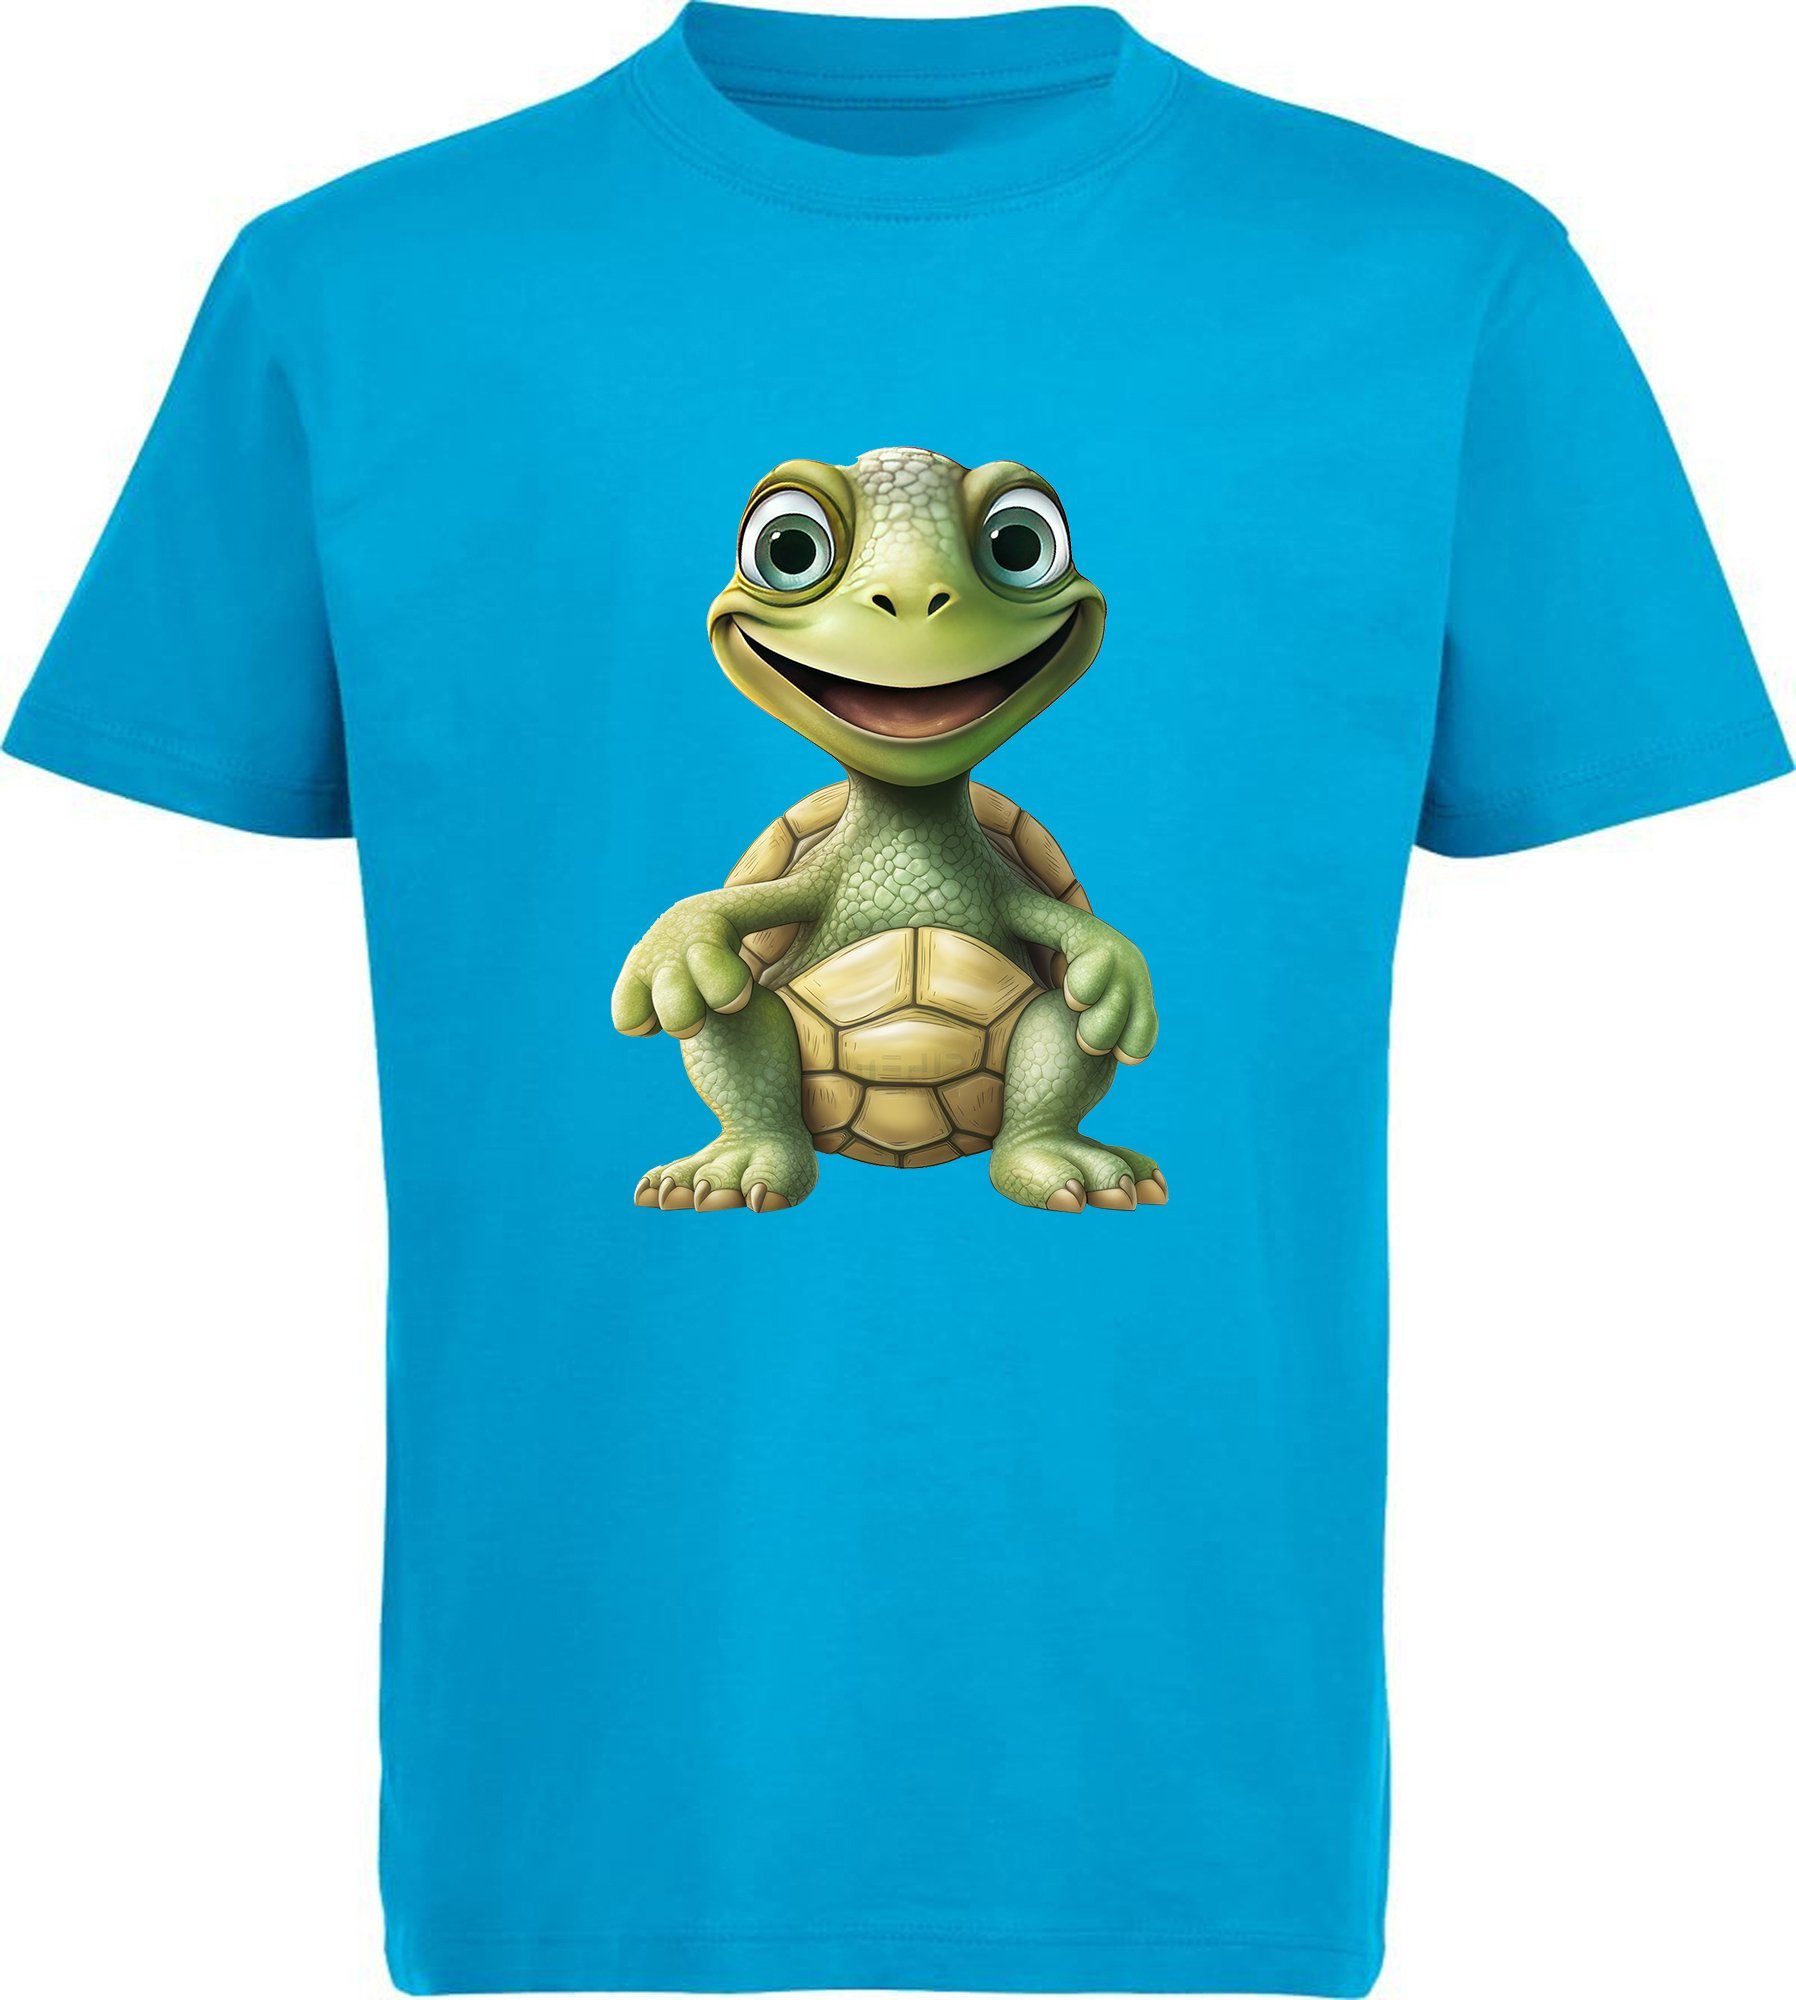 MyDesign24 T-Shirt Kinder Wildtier Print Shirt bedruckt - Baby Schildkröte Baumwollshirt mit Aufdruck, i279 aqua blau | T-Shirts